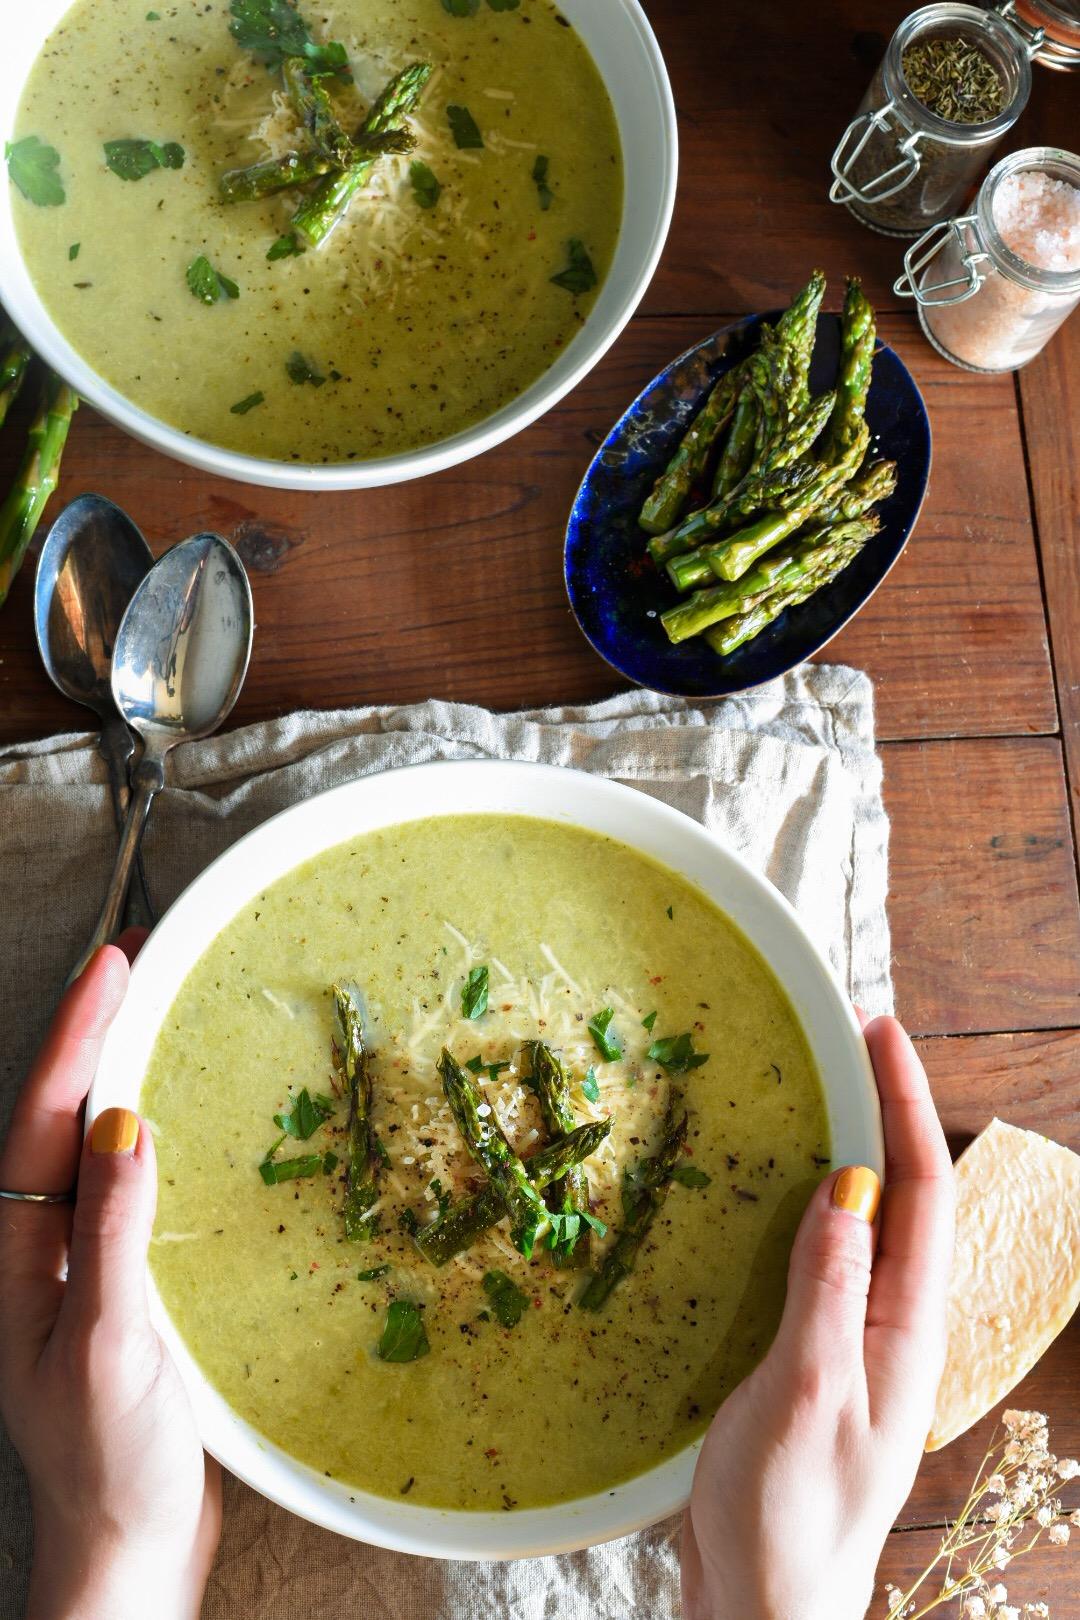 https://recipehippie.com/wp-content/uploads/2021/03/no-cream-asparagus-soup.jpg